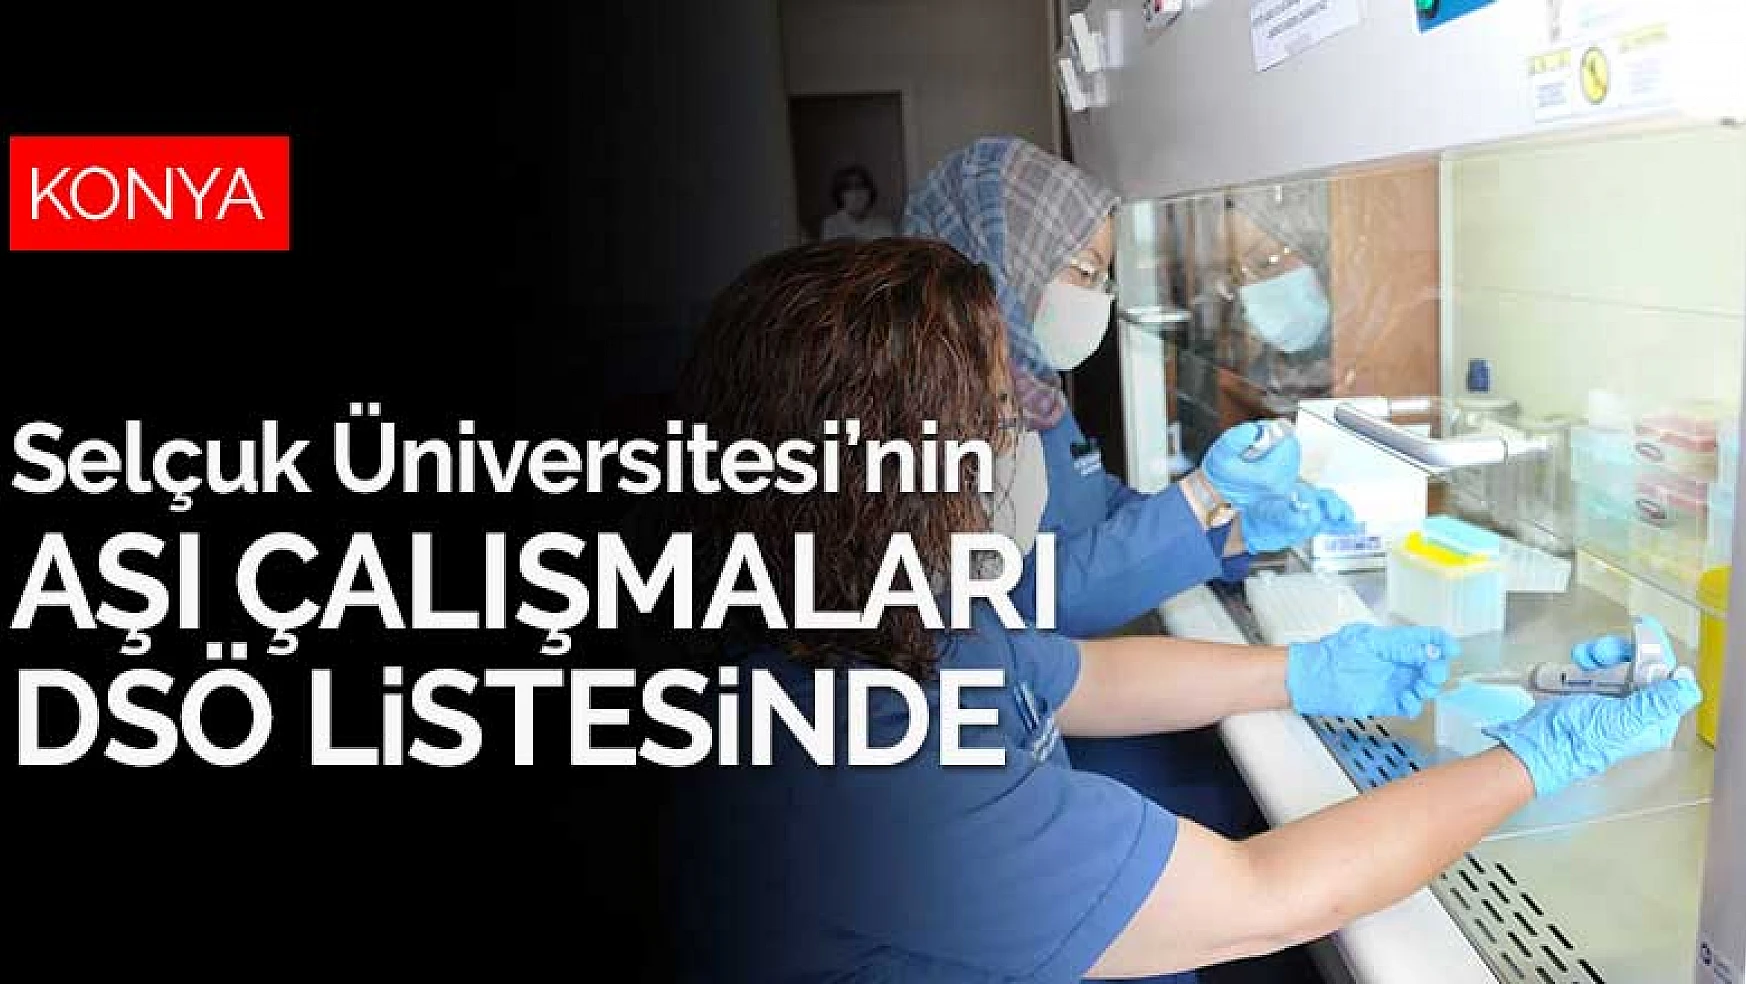 Selçuk Üniversitesi'nin koronavirüs aşı çalışmaları DSÖ'nün listesinde